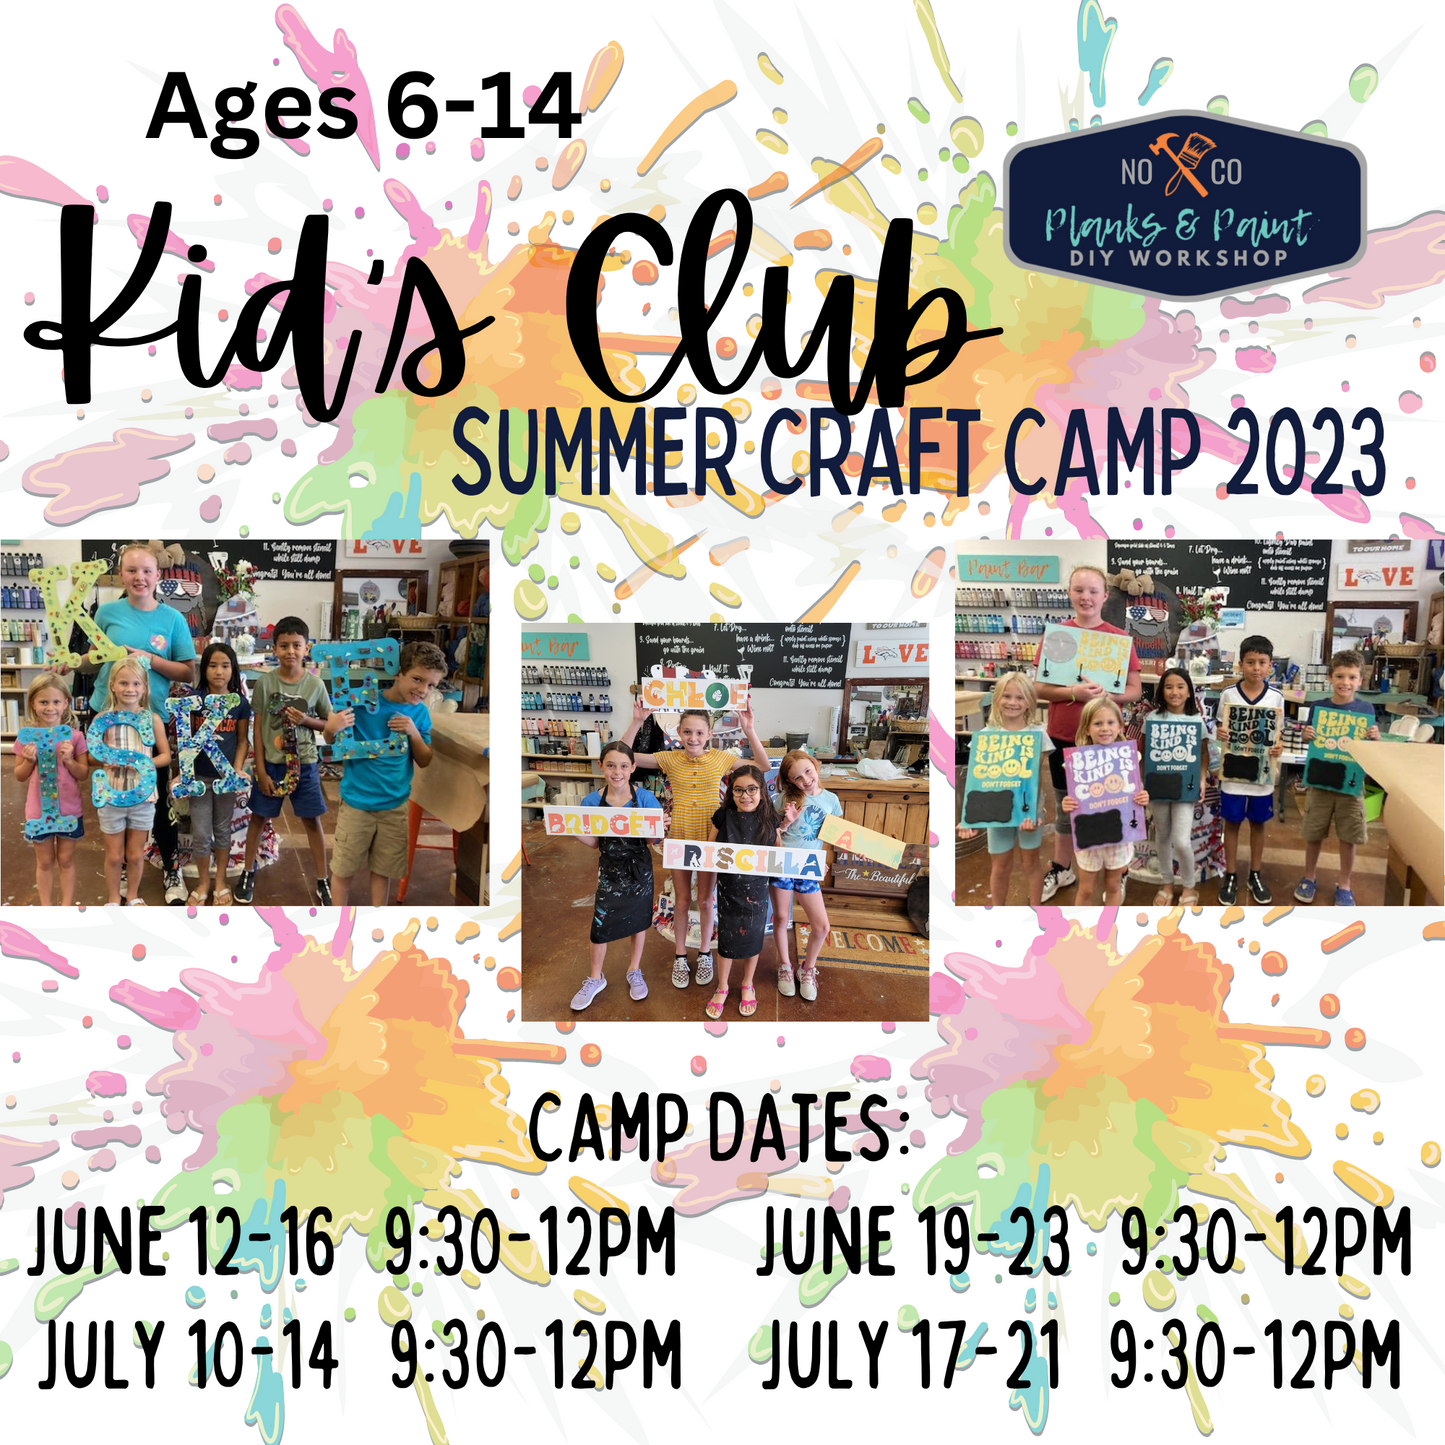 Kid's Club Summer Crafts Camp 2023